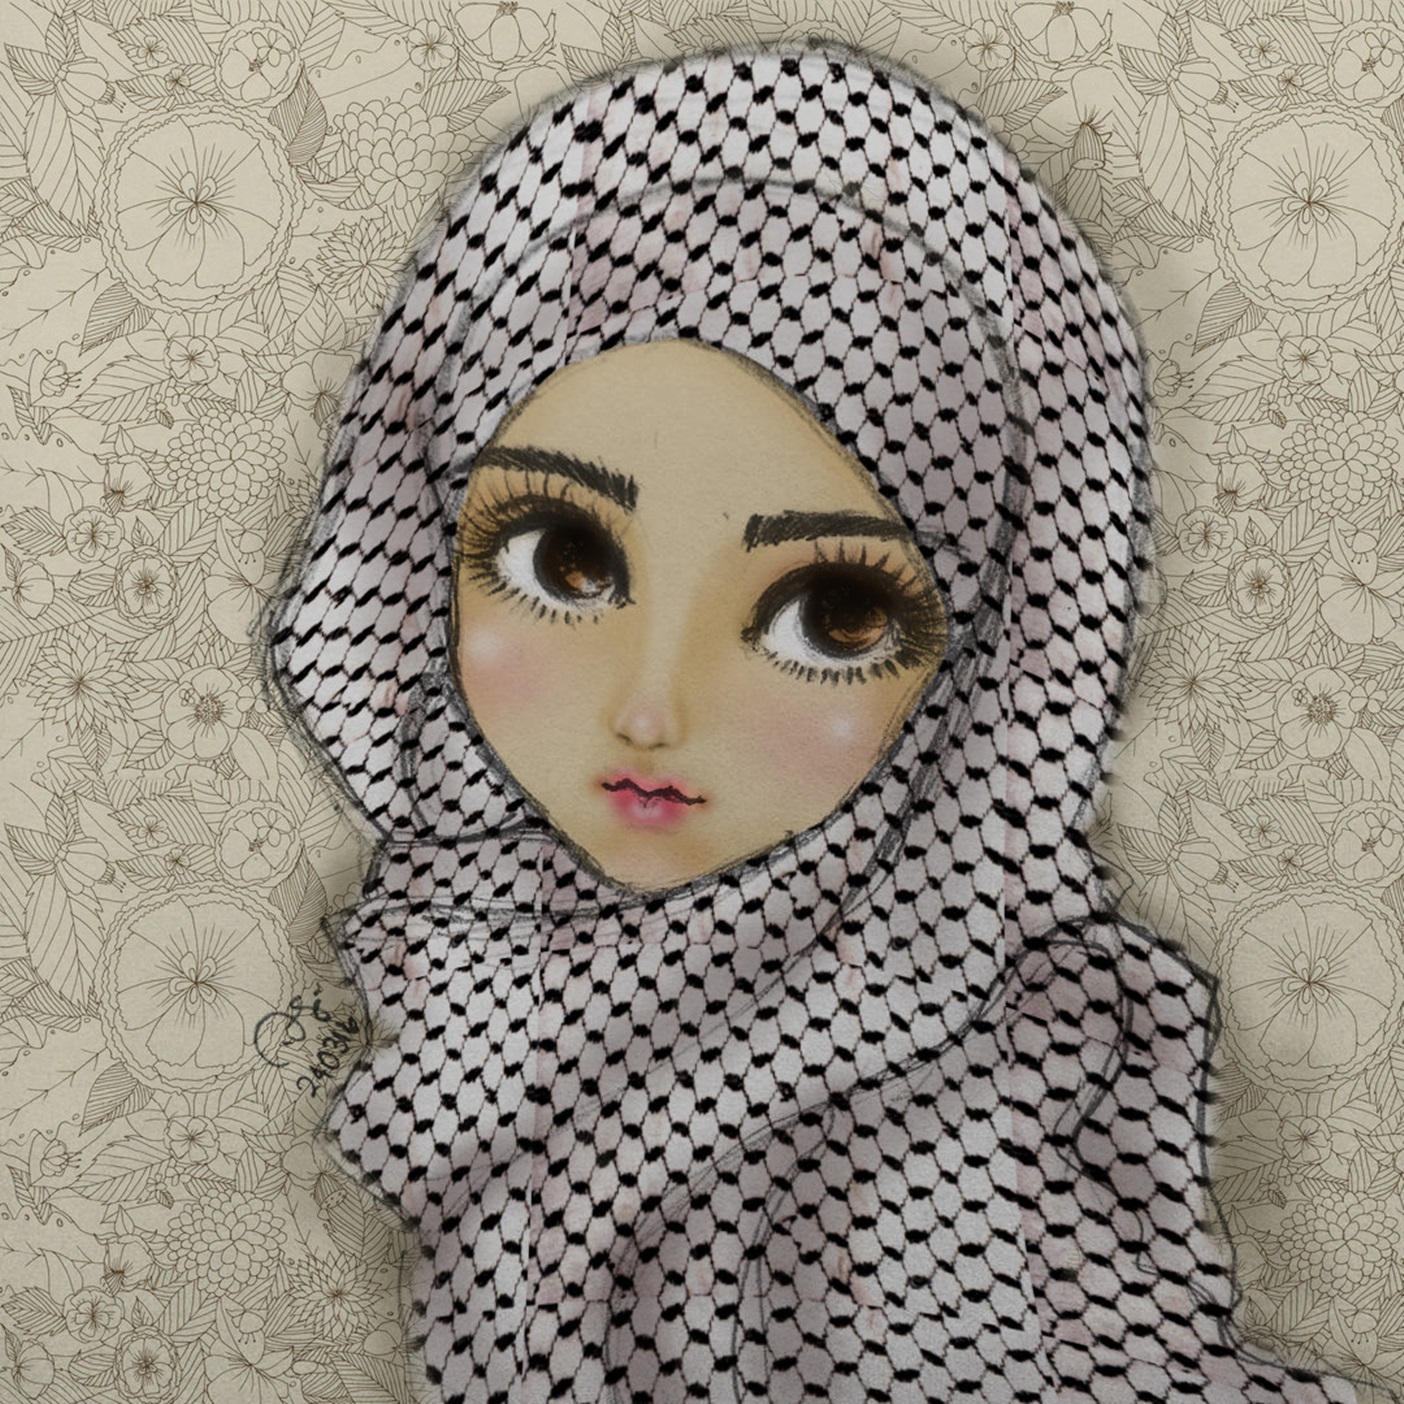 Caricature Doll Palestine Children Eyes 1404x1404